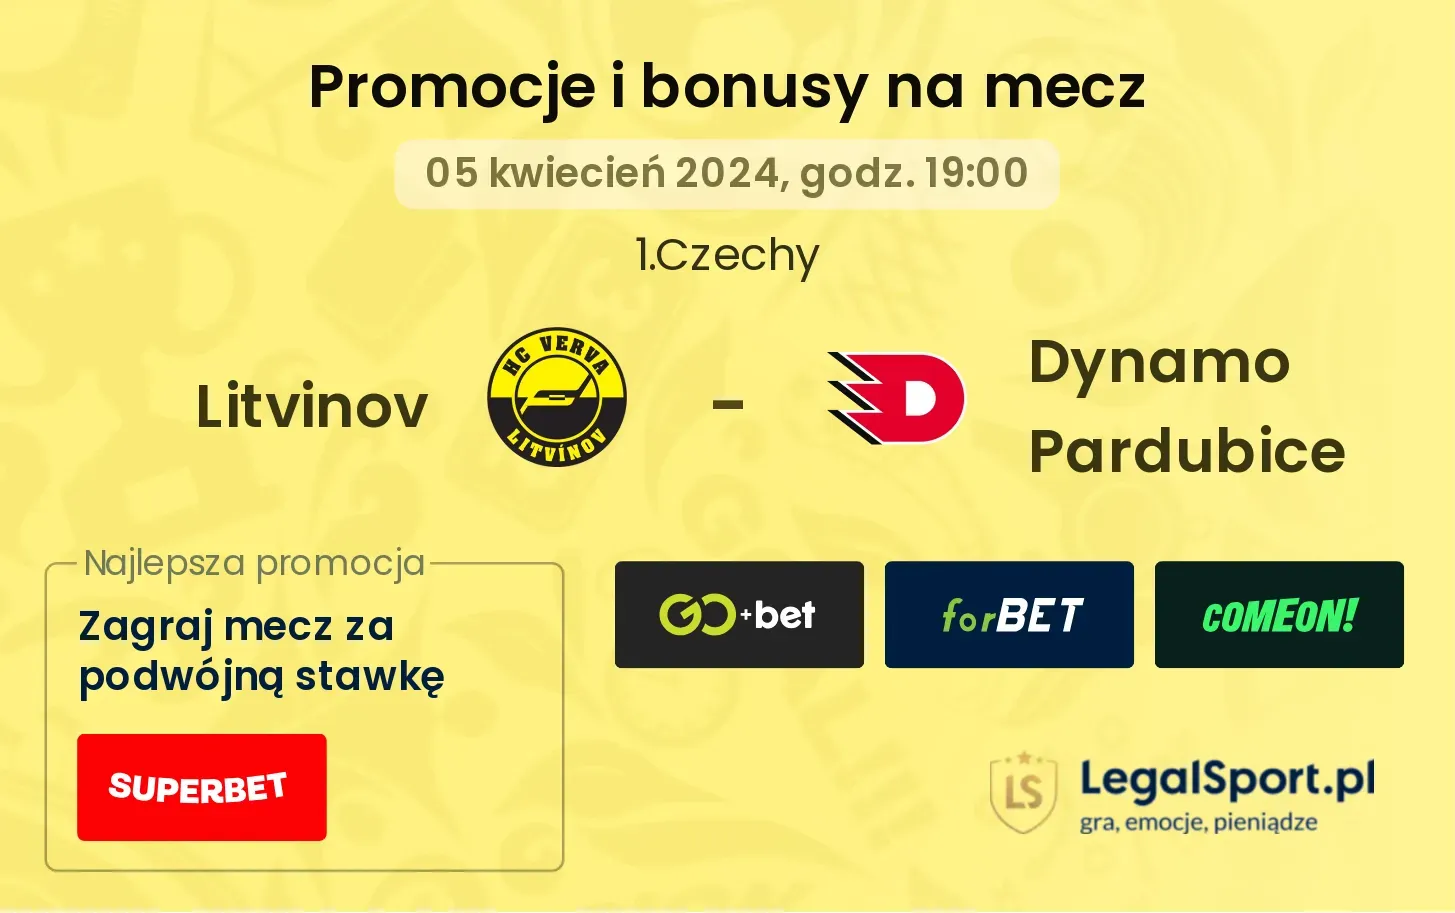 Litvinov - Dynamo Pardubice promocje bonusy na mecz